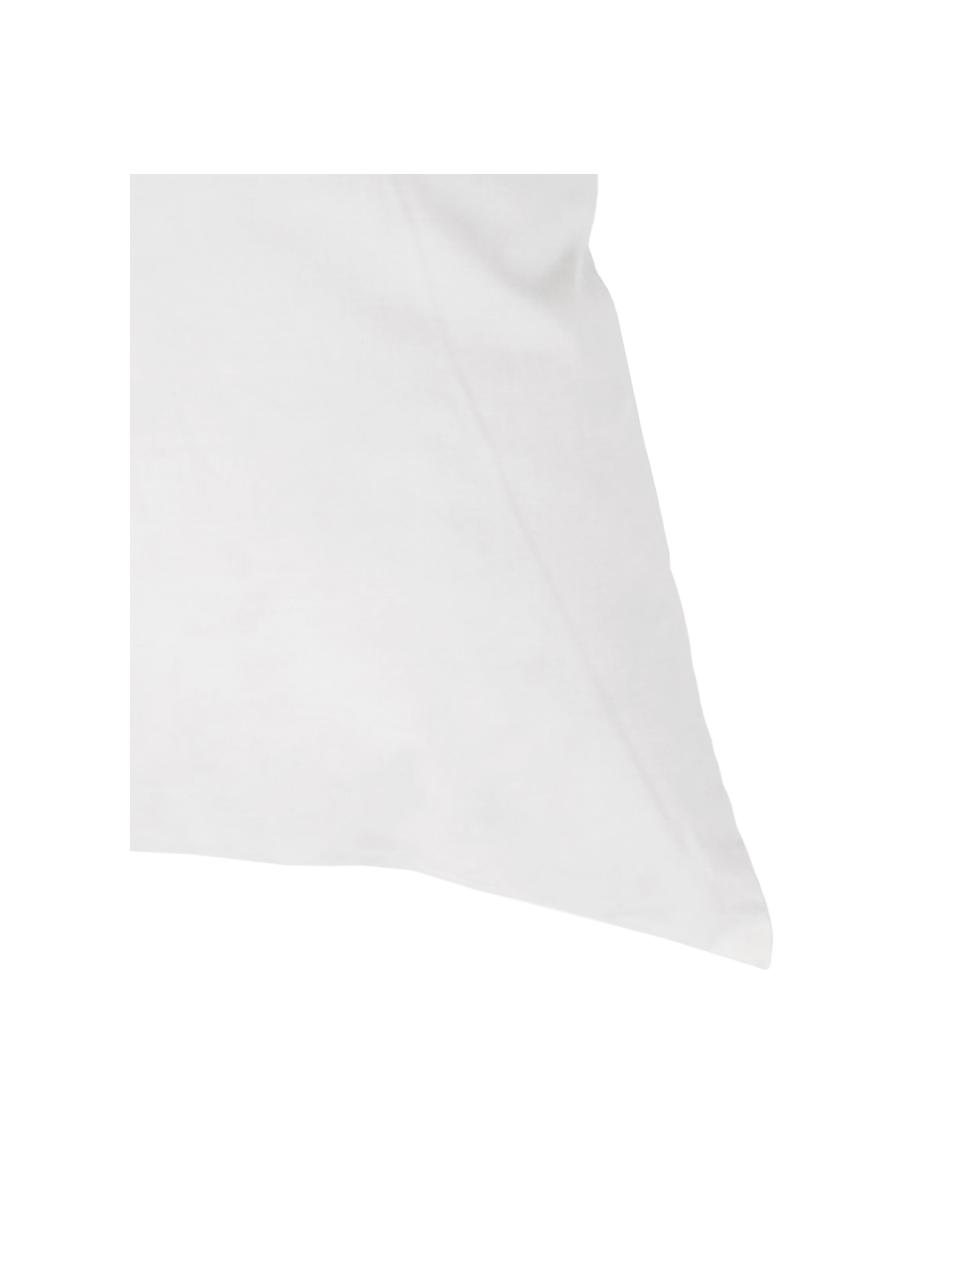 Wkład do poduszki z pierza Comfort, 50x50, Biały, S 50 x D 50 cm